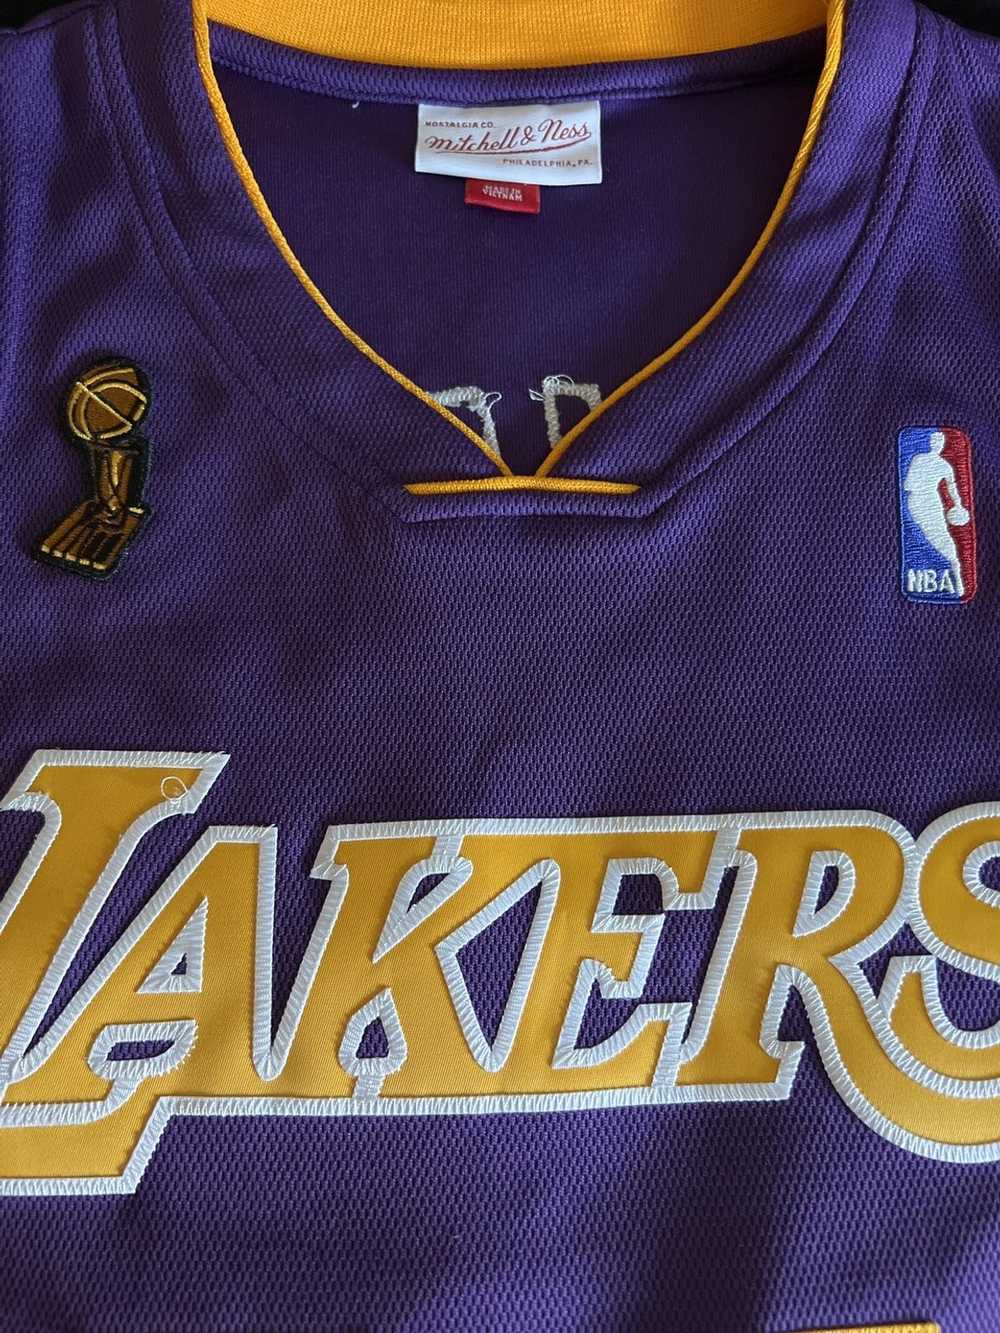 NBA Lakers Kobe Bryant 08-09 - image 5